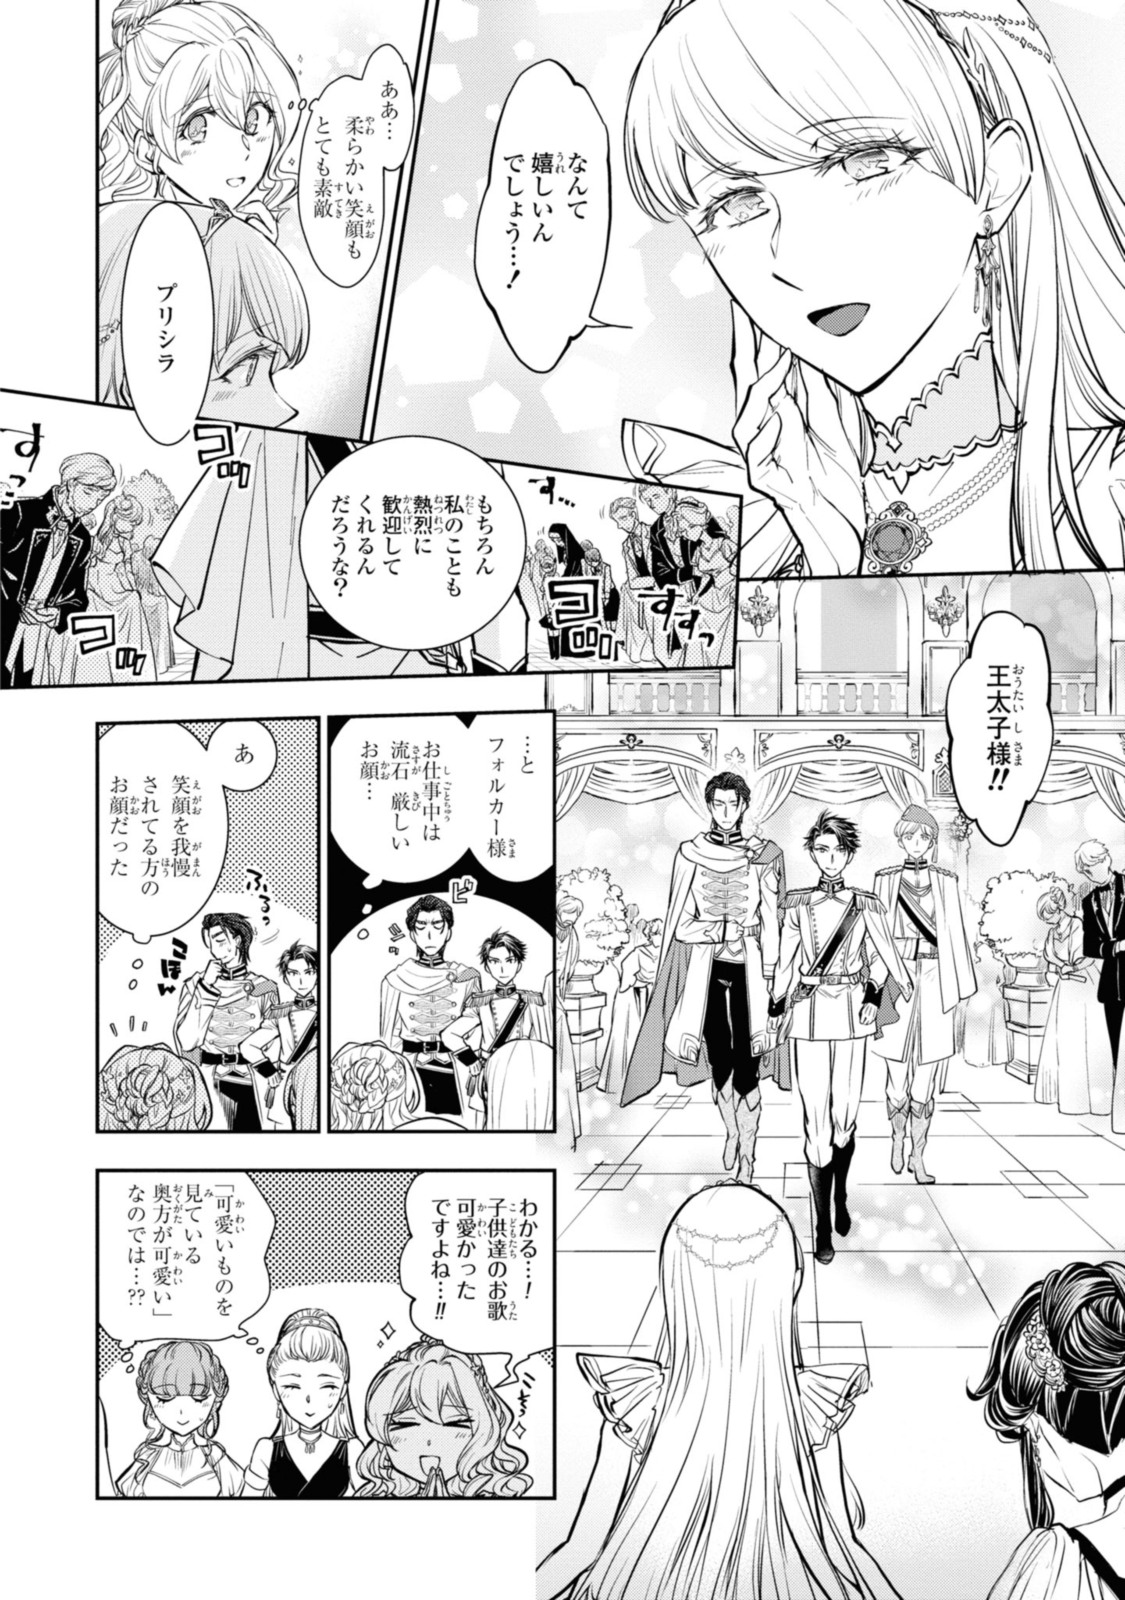 Sakkon no Cinderella wa Kutsu wo Otosanai. - Chapter 13.3 - Page 2